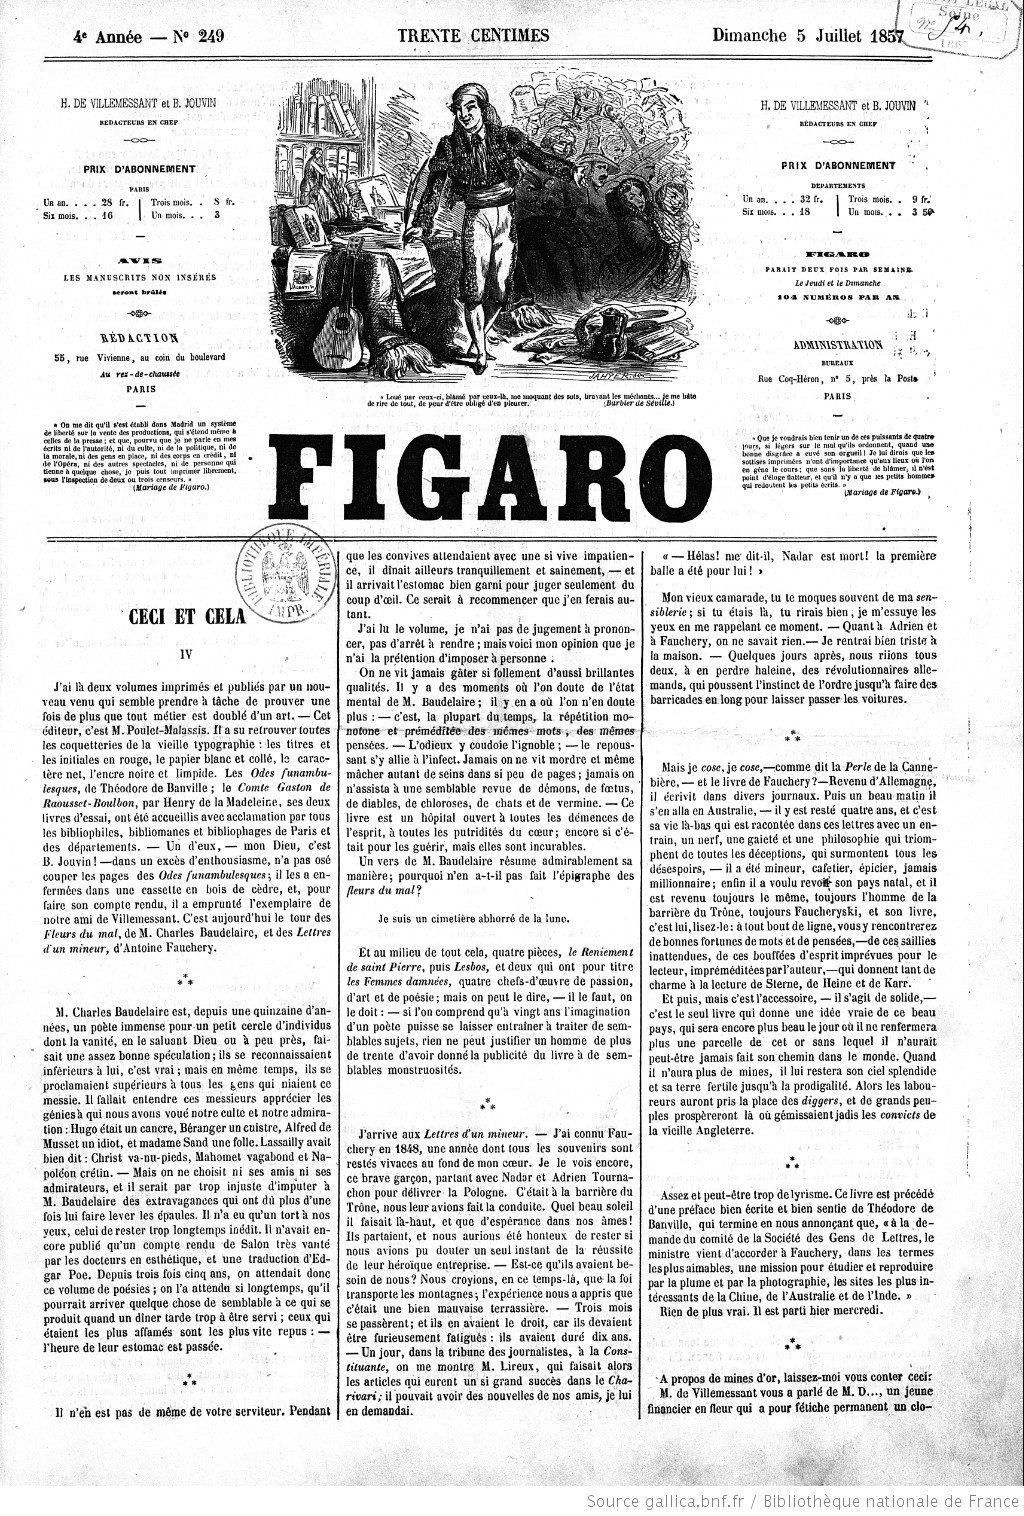 El diario francés Le Figaro fue uno de los más críticos tras la publicación de "Las flores del mal".